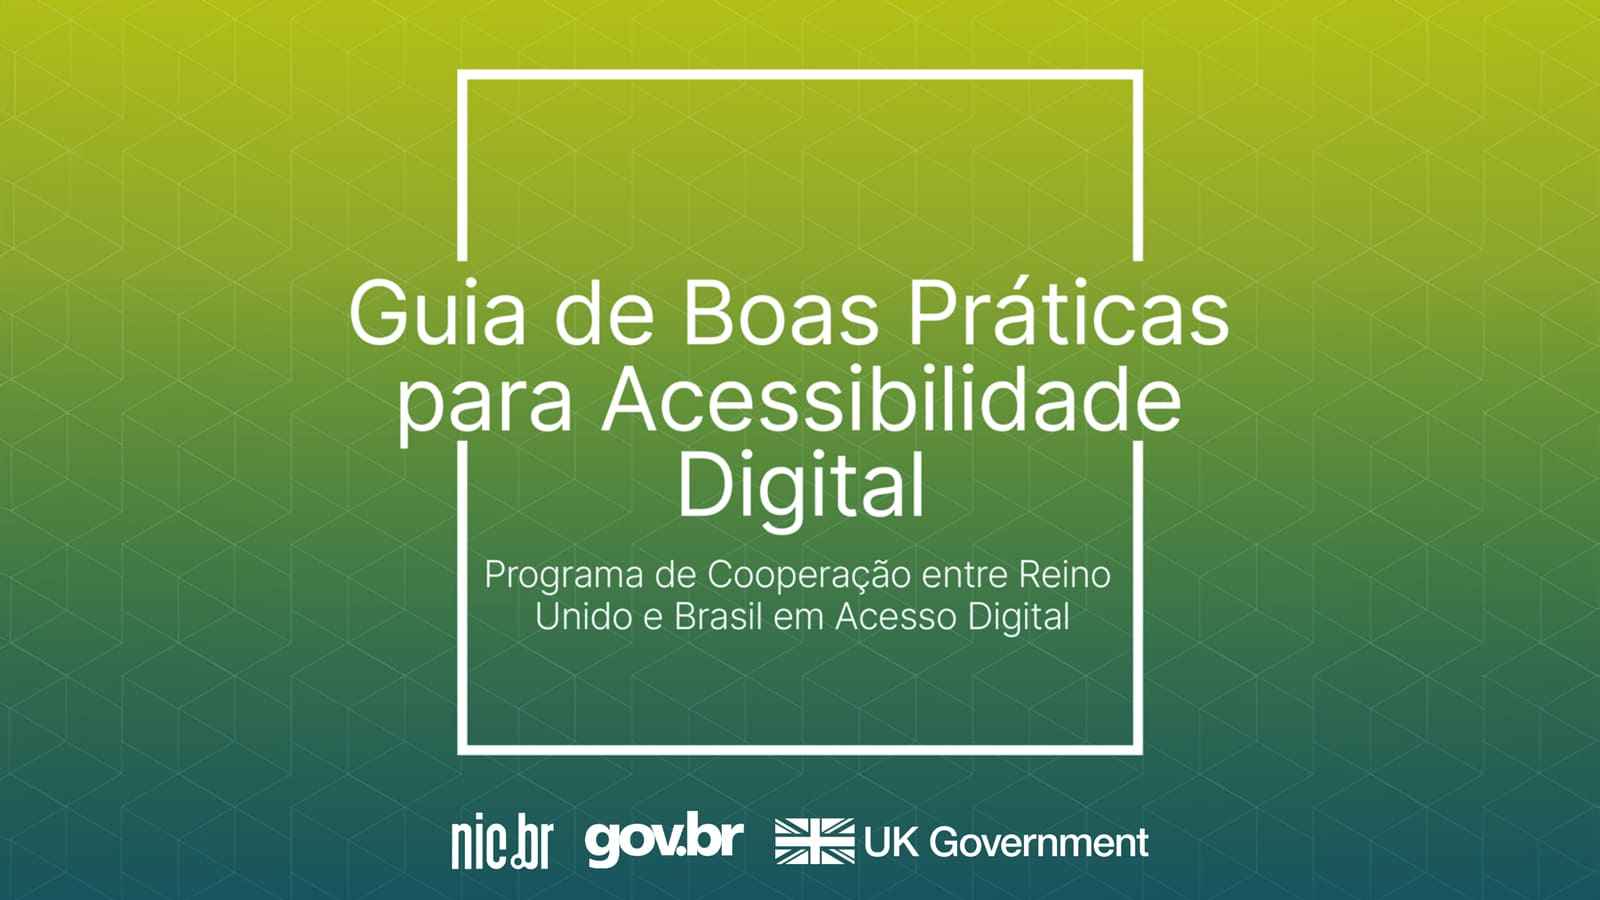 Capa do guia de acessibilidade digital. Fundo degrade azul e verde. Texto branco: "Guia de boas práticas para Acessibilidade Digital. Programa de cooperação entre Reino Unido e Brasil em acesso digital".